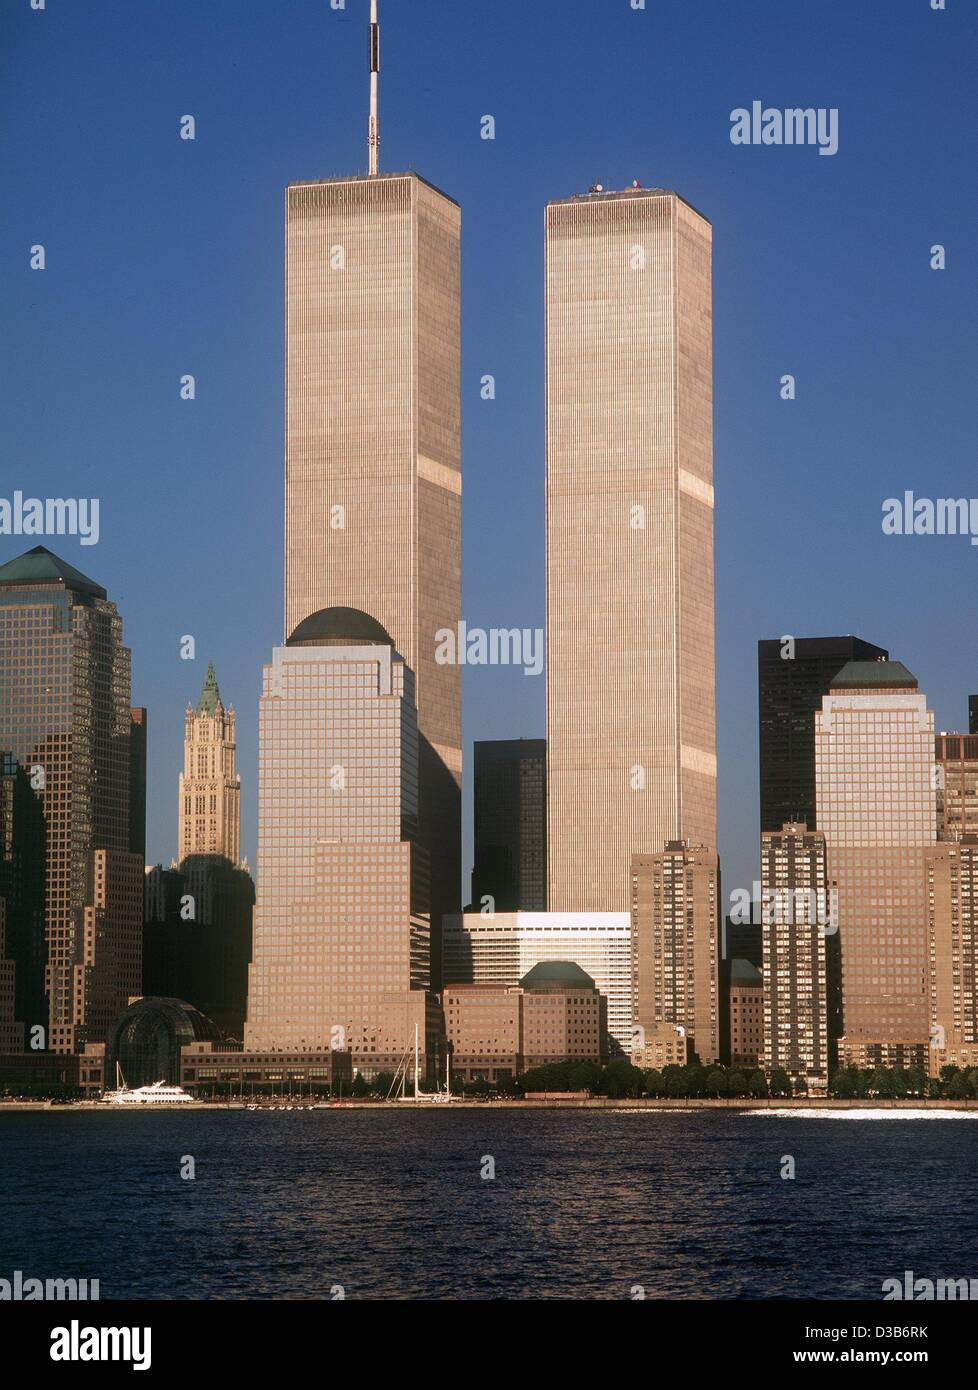 (Dpa) - skyline di Manhattan fino al 11 Settembre 2001: le torri gemelle del World Trade Center di salire in alto sopra gli altri edifici di Manhattan (filer datata 1996). Entrambe le torri crollate e 2,823 persone sono state uccise quando i terroristi islamici schiantato il WTC con highjacked piani su 11 Settembre Foto Stock